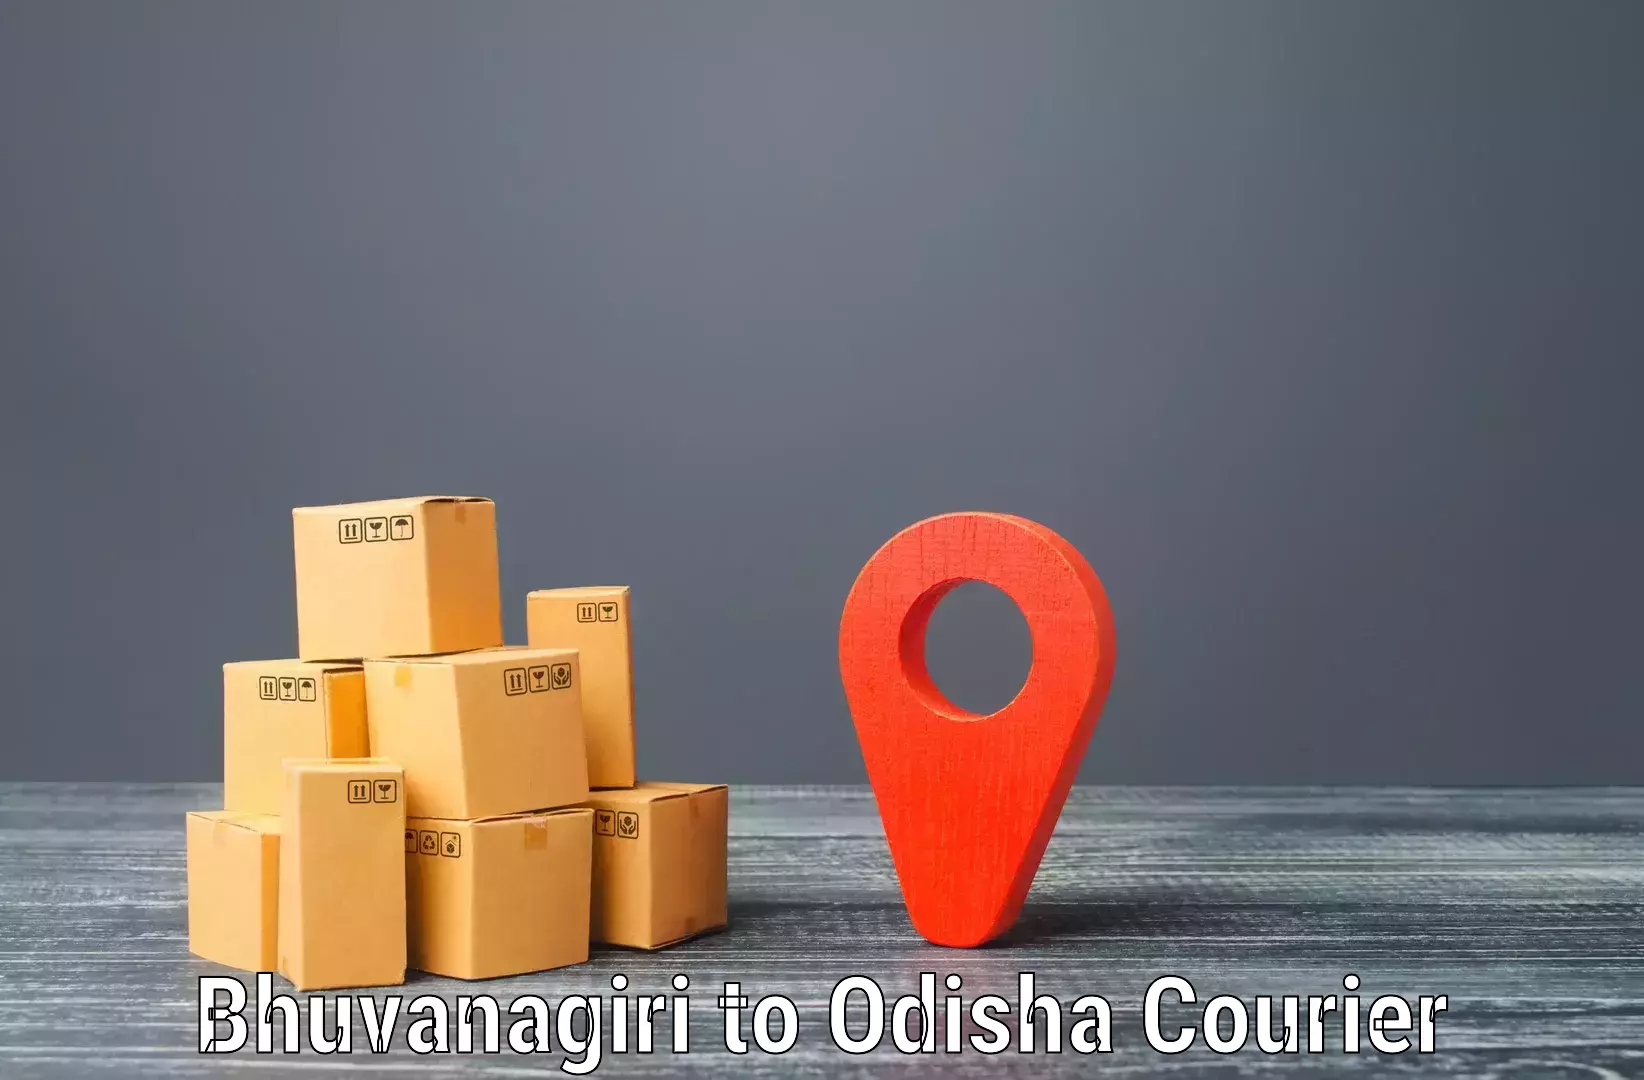 Global logistics network Bhuvanagiri to Joda